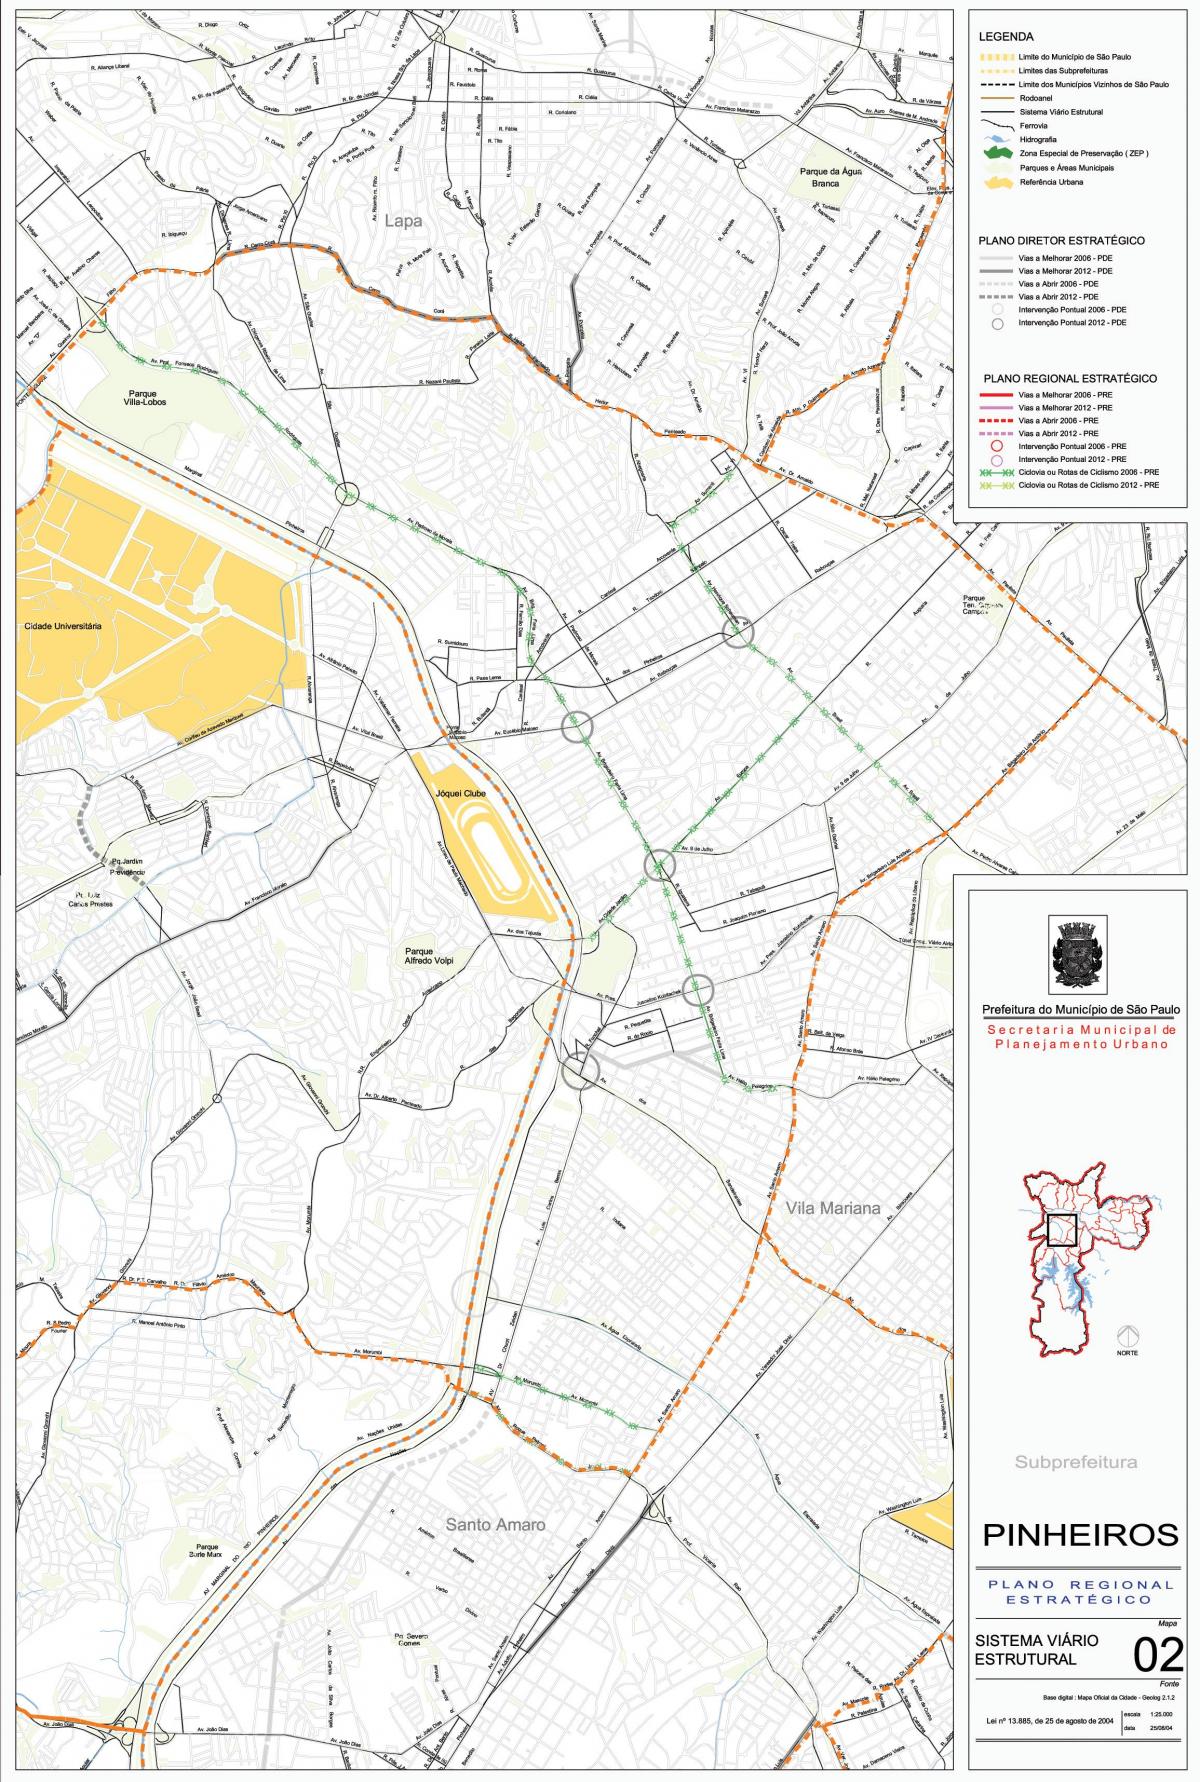 નકશો Pinheiros સાઓ પાઉલો - રસ્તાઓ